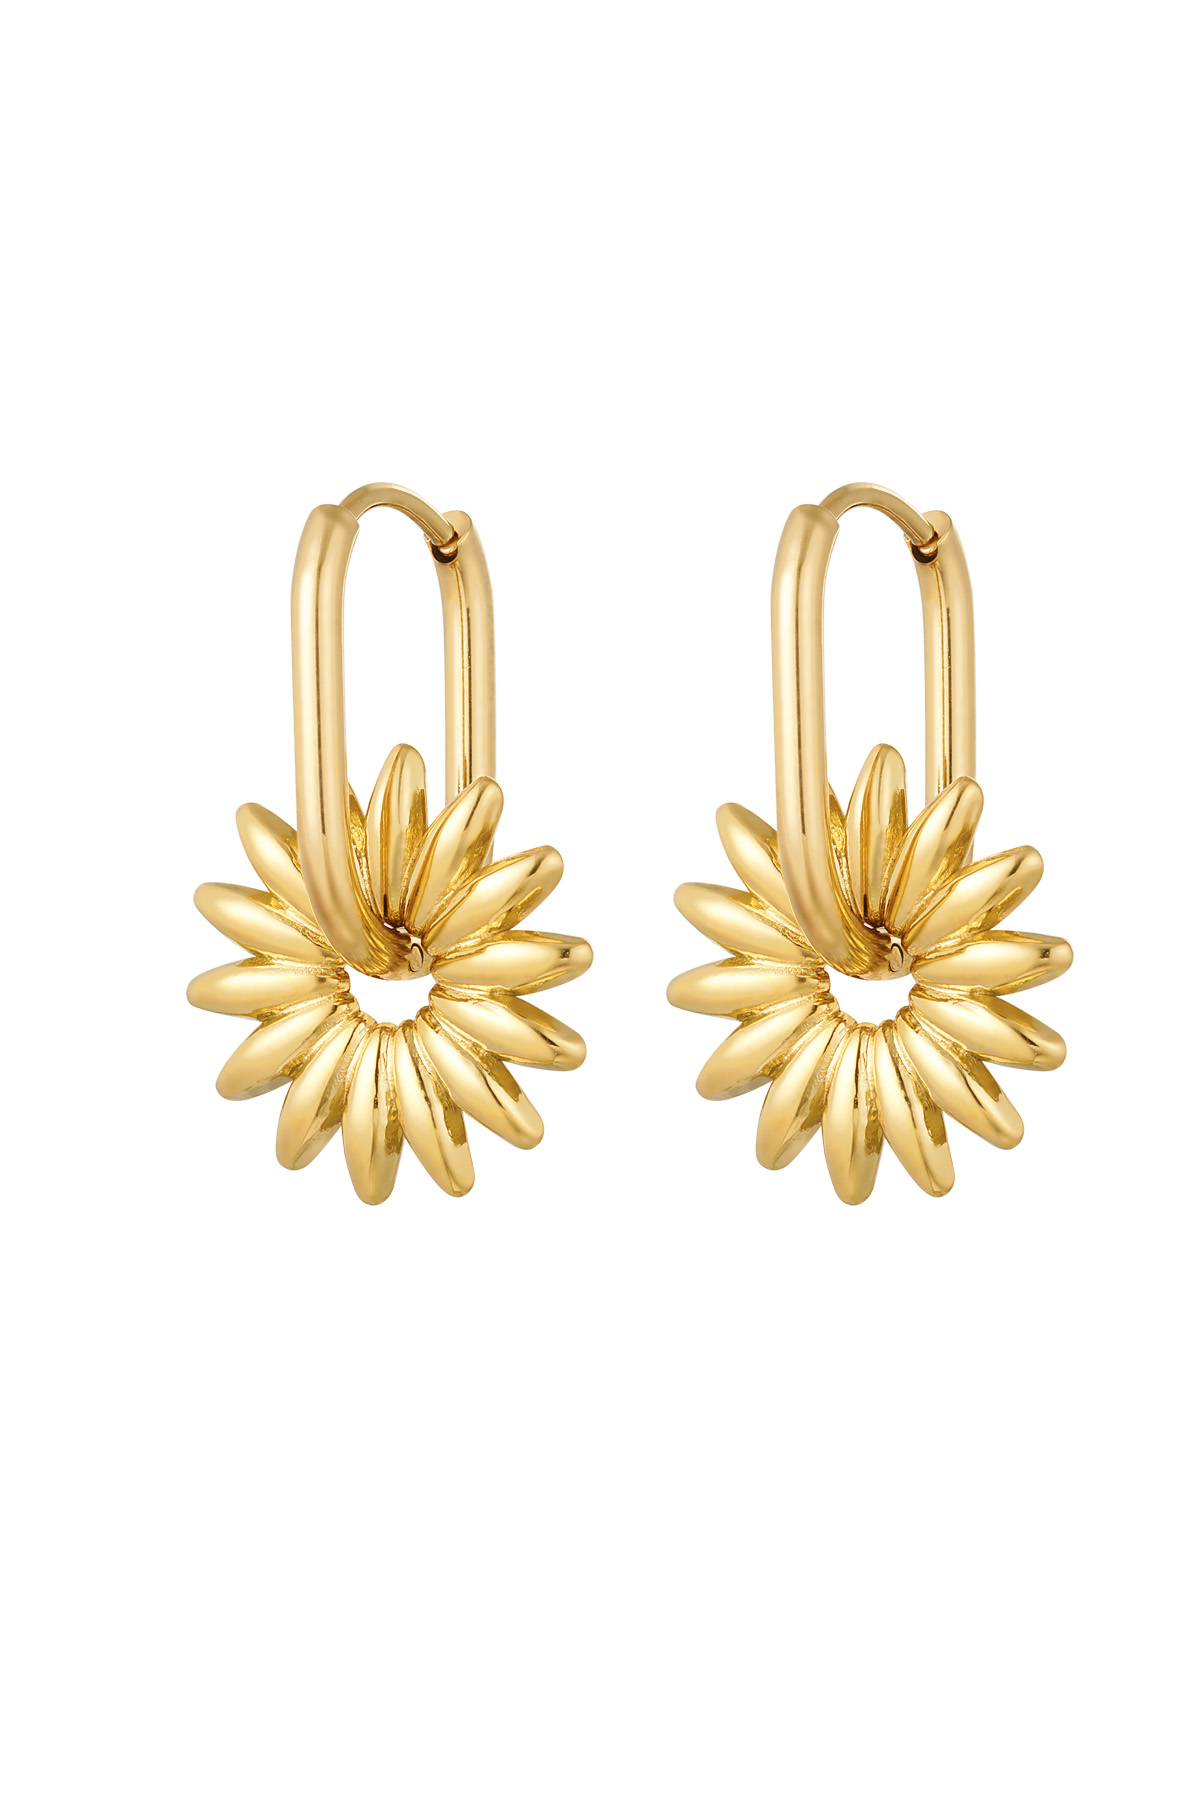 Längliche Ohrringe mit Blume – Gold 